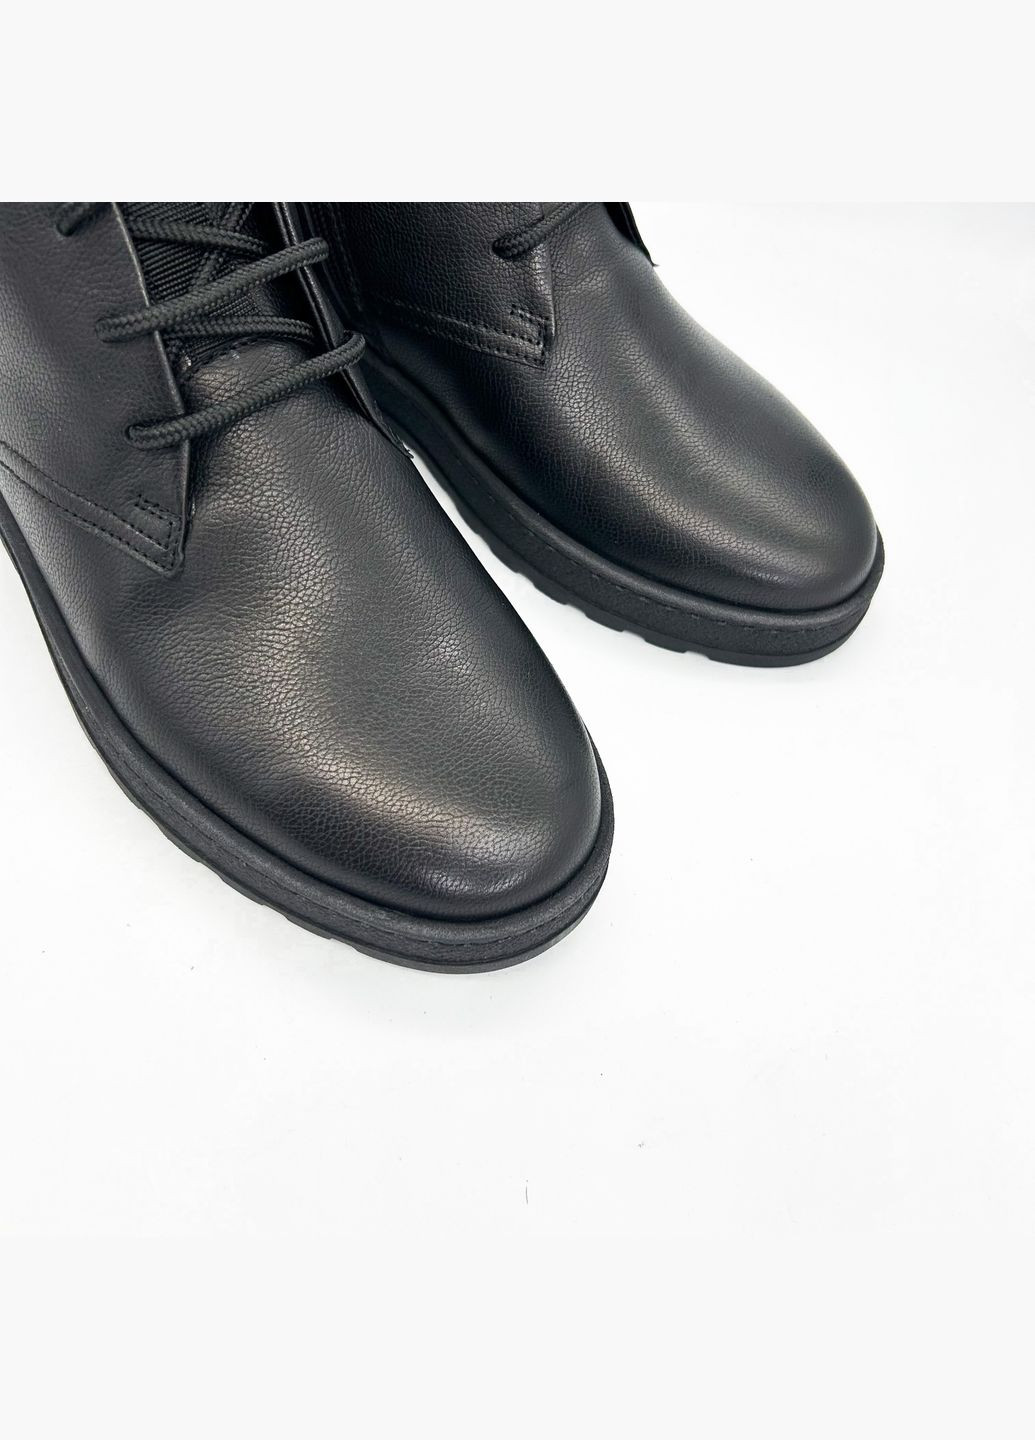 Черные зимние ботинки (р) кожа 0-2-2-8341 Stepter